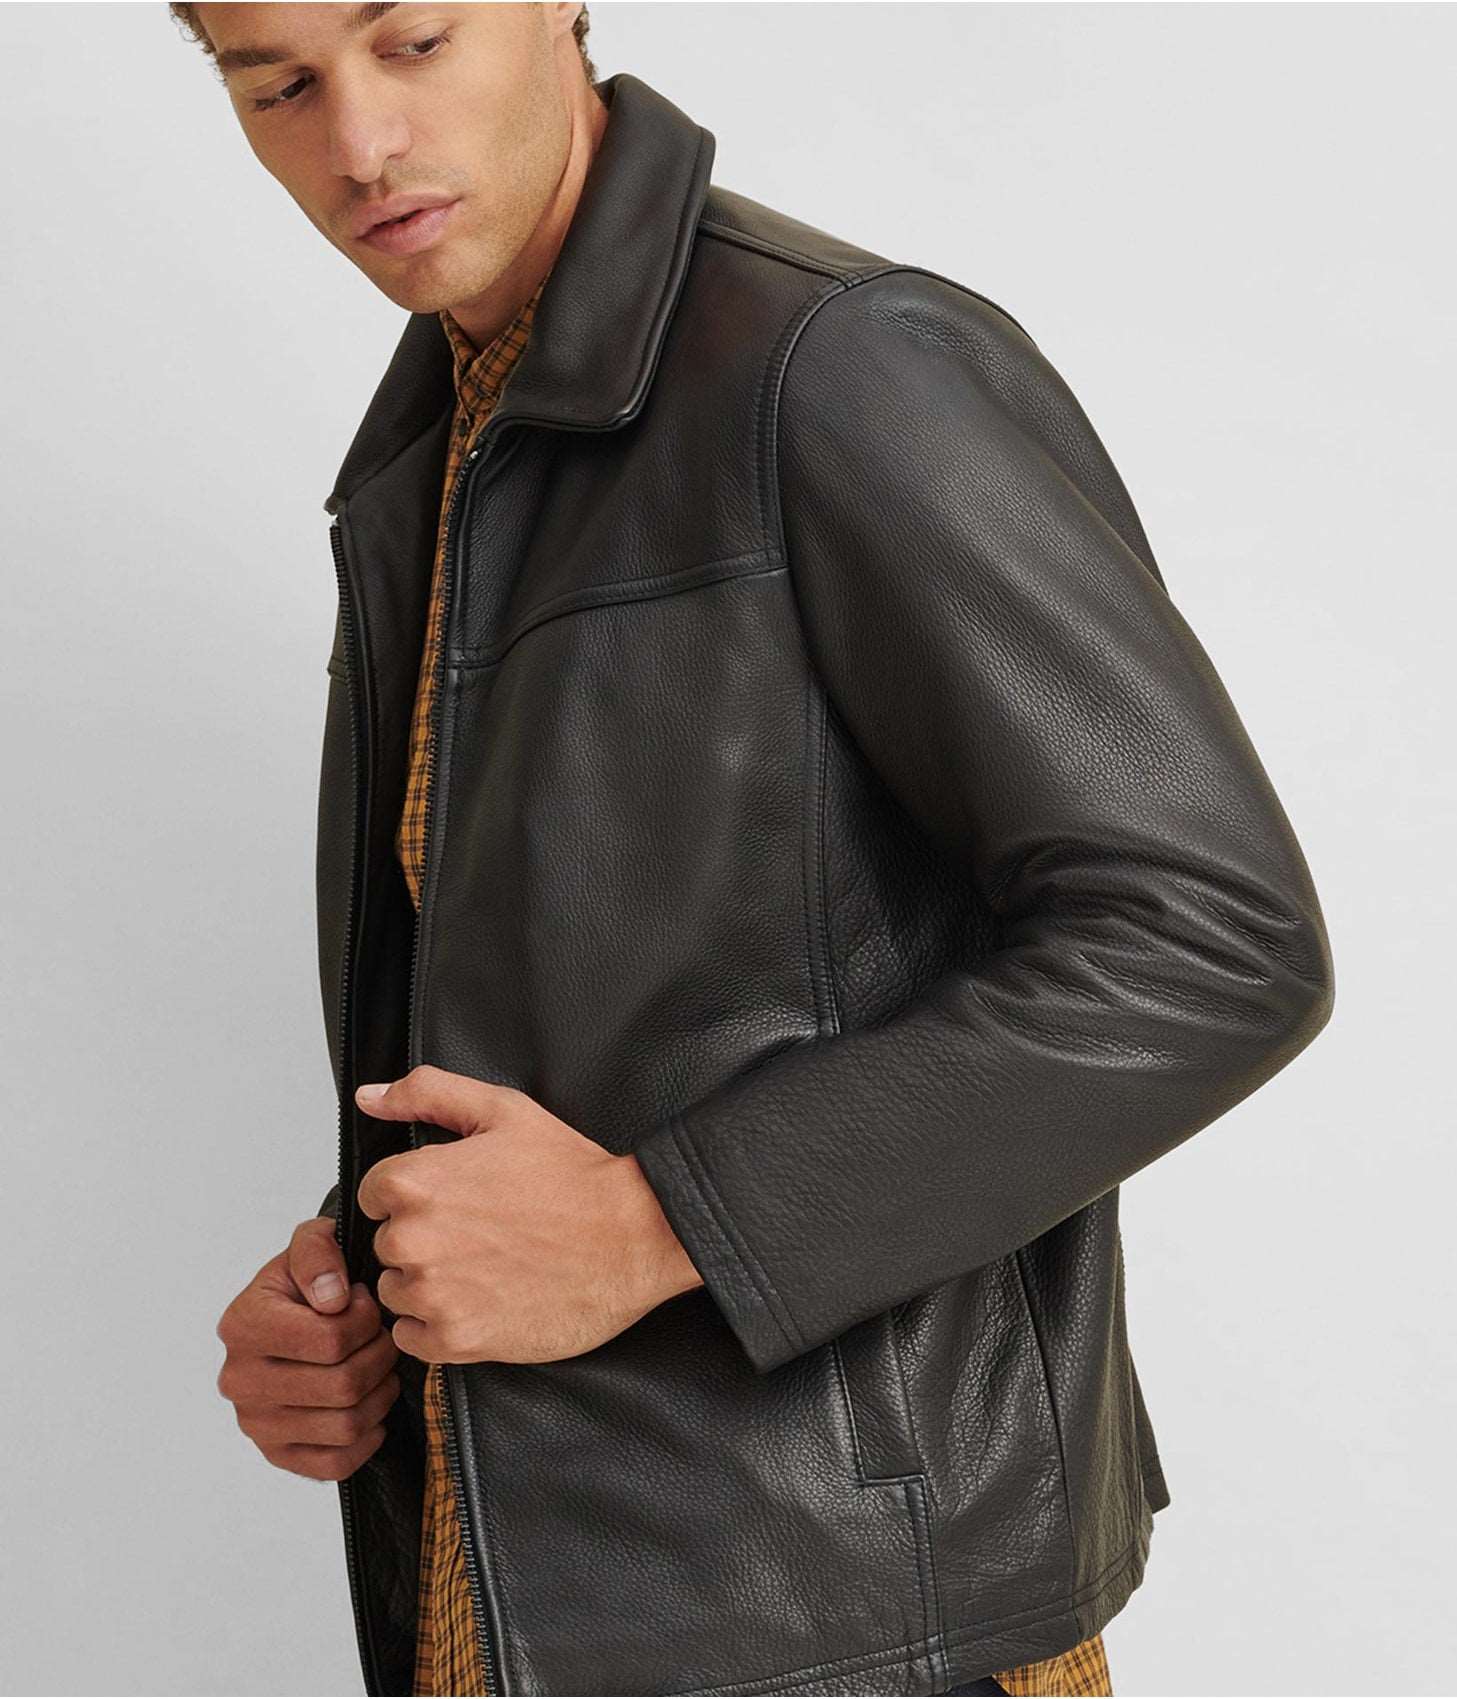 Men's Leather Jacket Black